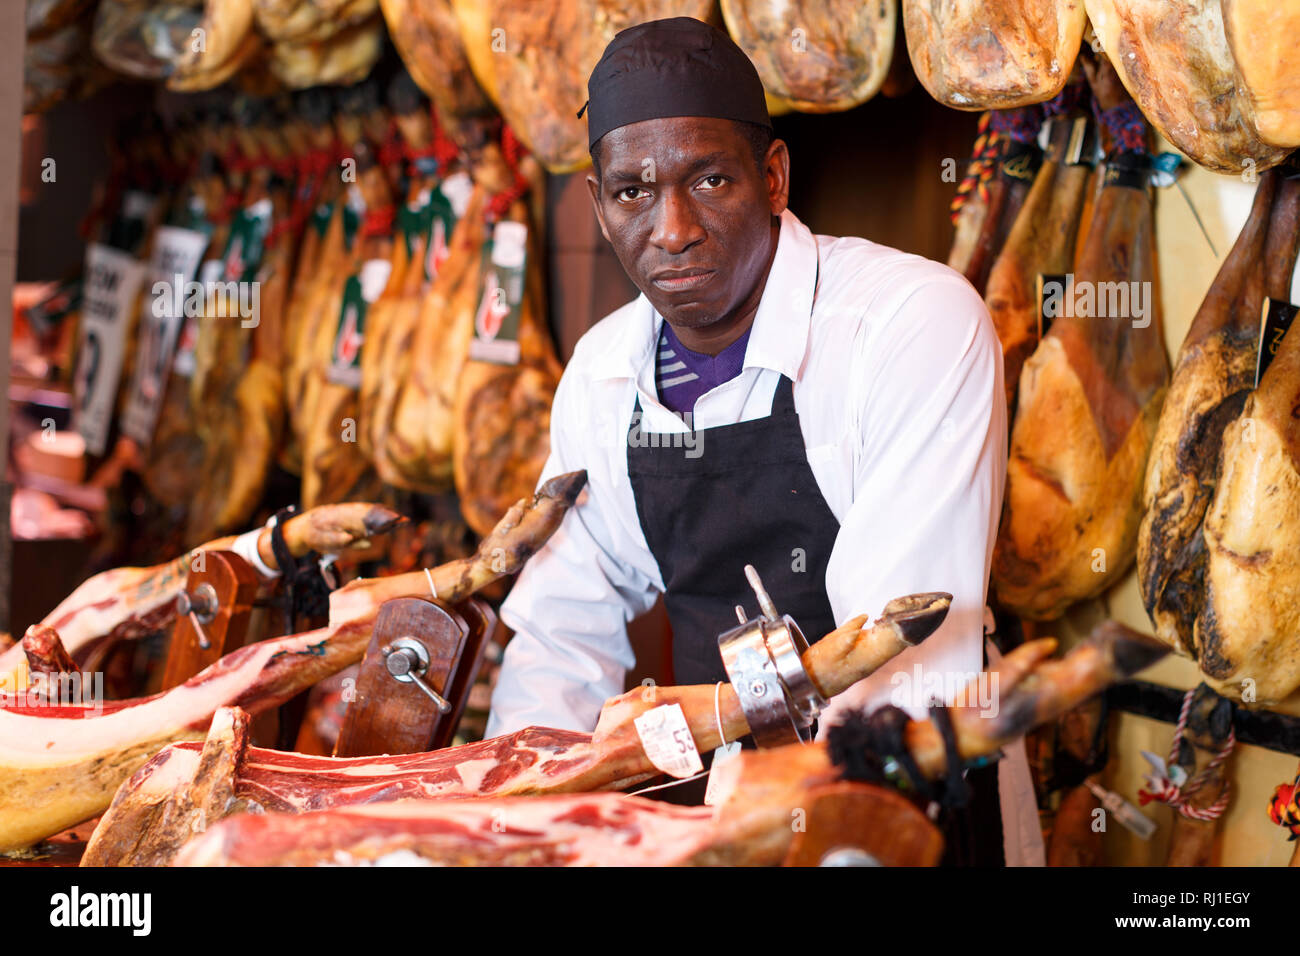 Portrait von erfahrenen Afrikaner Metzger auf dem Hintergrund der Rack mit hängenden verschiedene Jamon im Shop Stockfoto